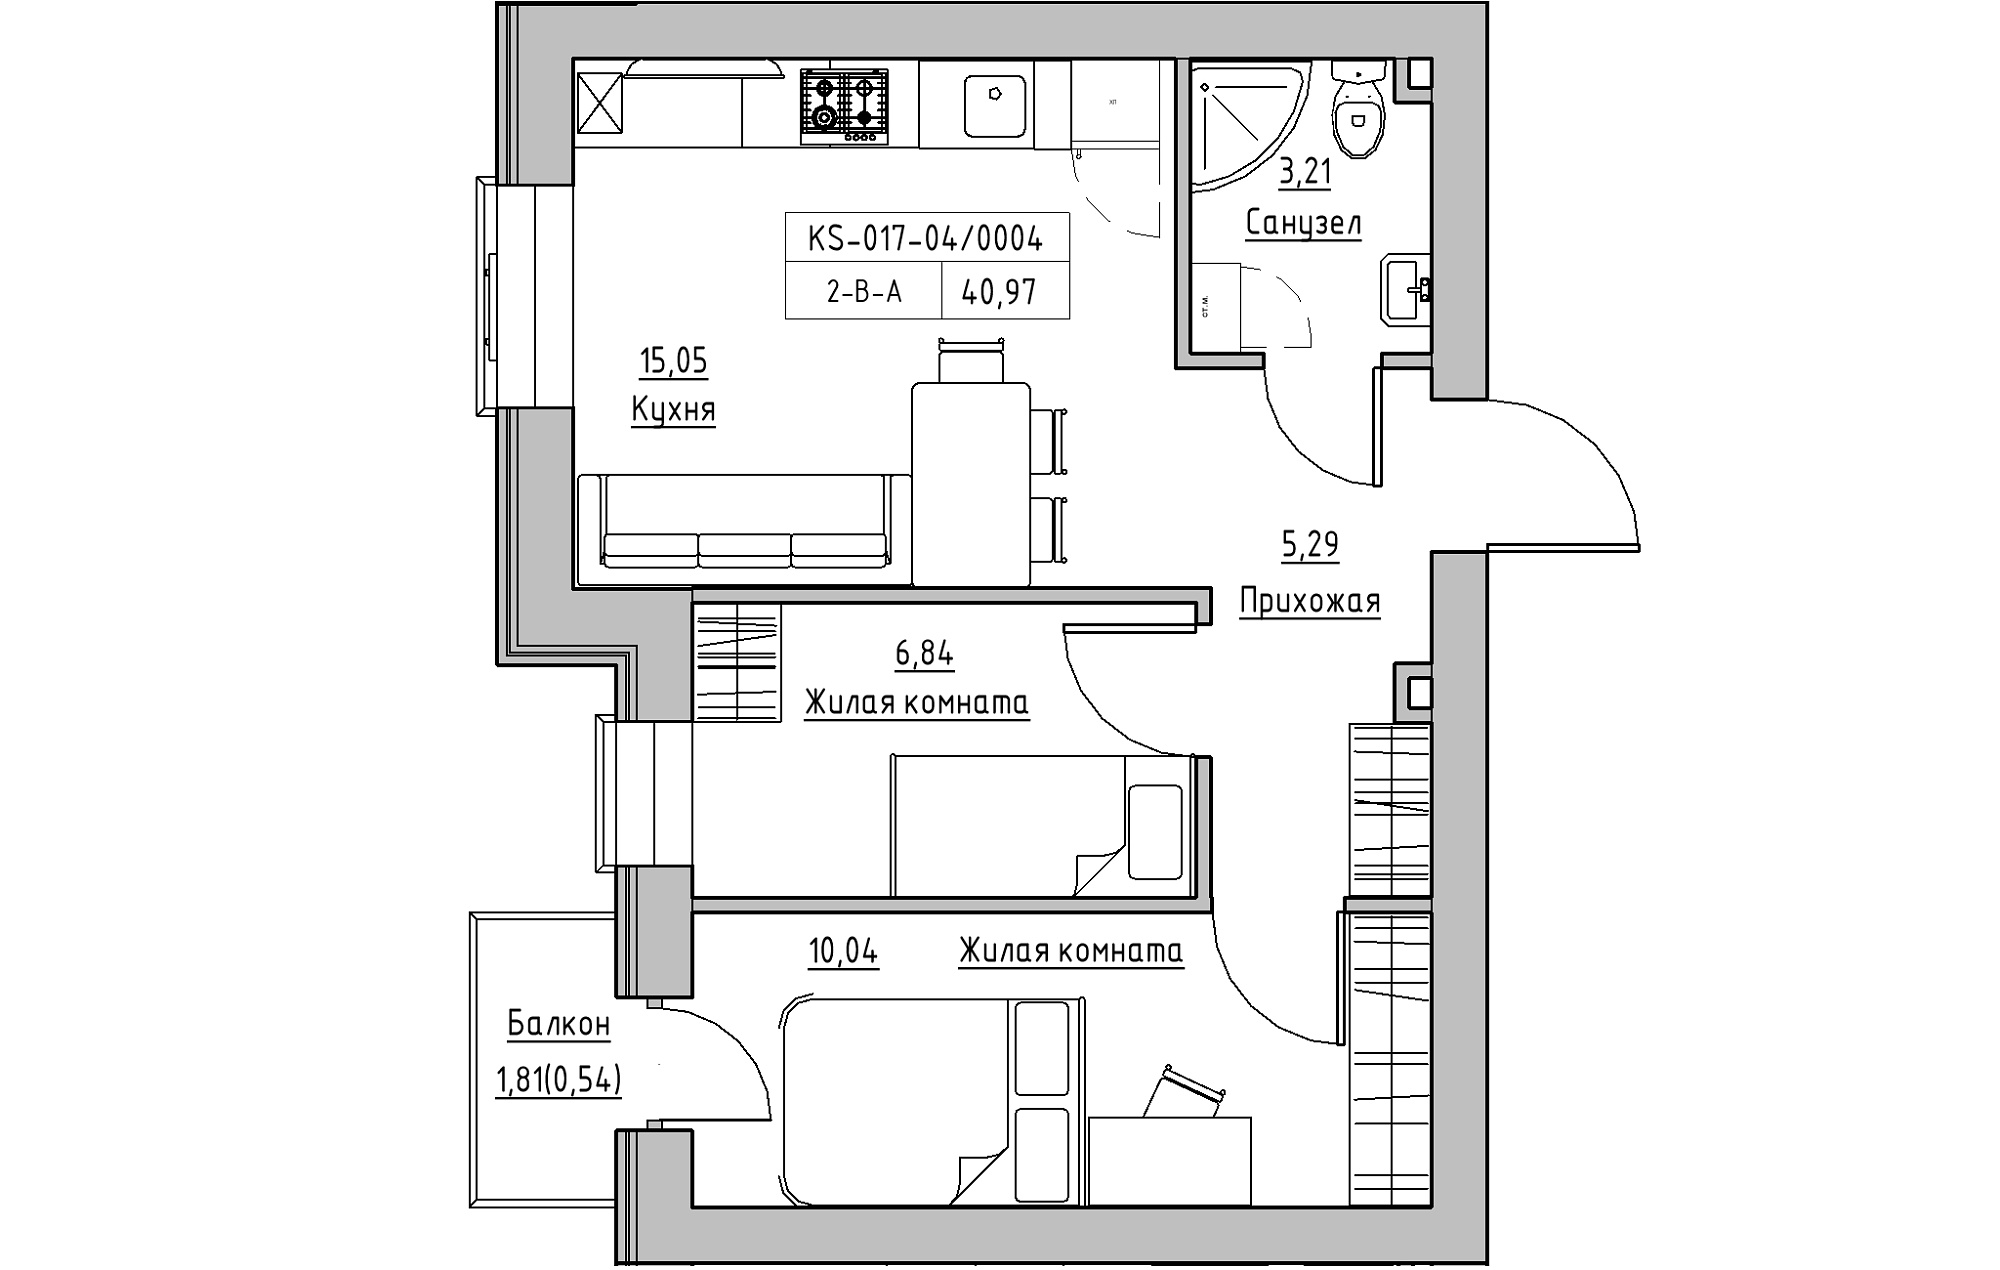 Планировка 2-к квартира площей 40.97м2, KS-017-04/0004.